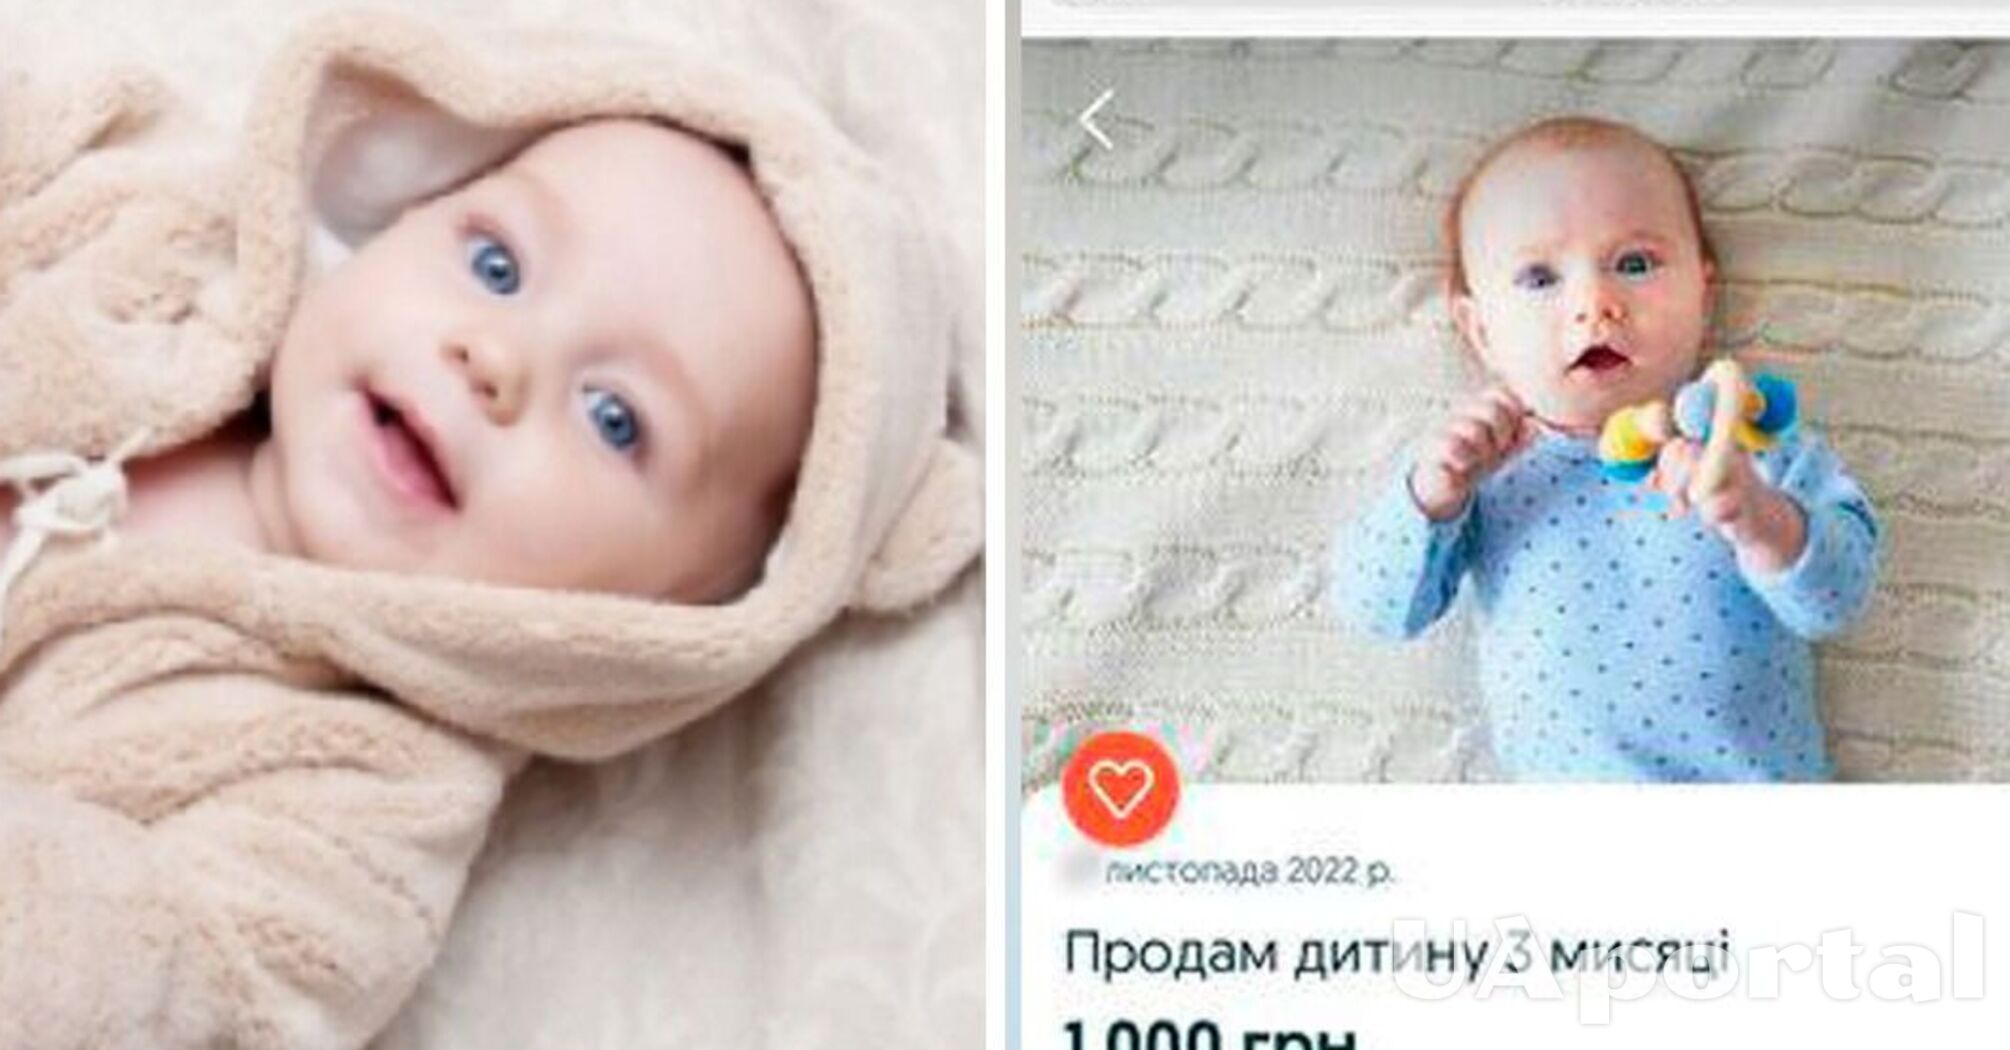 В Полтавской области 12-летний ребенок 'по приколу' продавал младенца за 1000 гривен